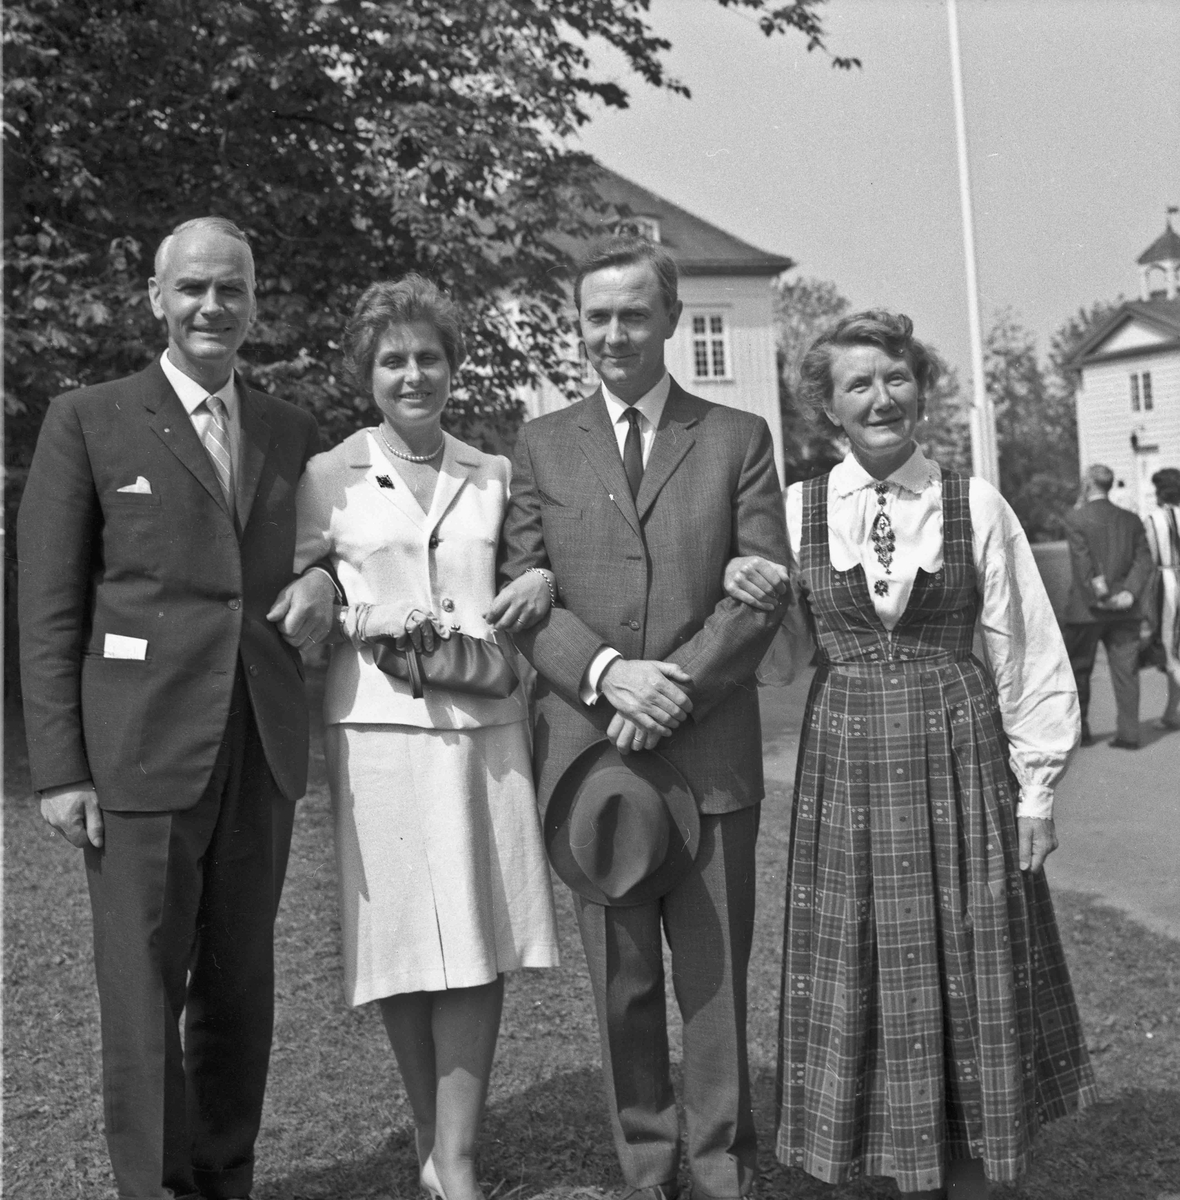 Fra v.: Eirik Sundli, ekteparet Marit og Einar Sundli (bror til Eirik), Marit Sundli.